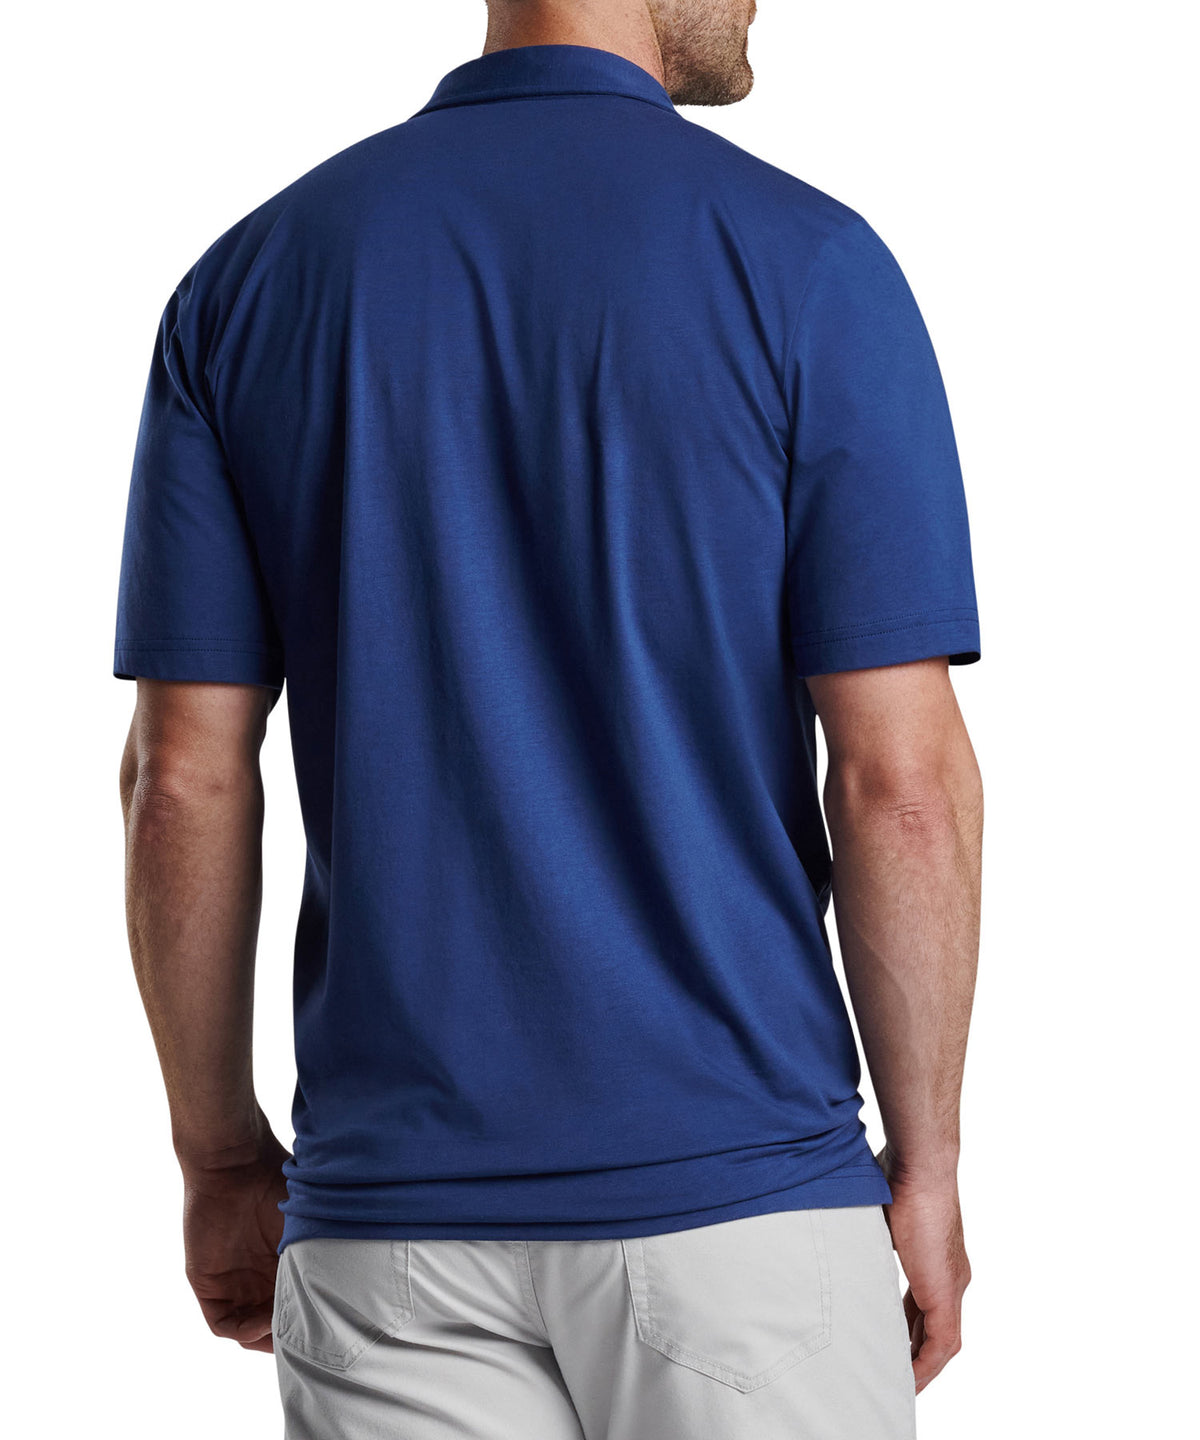 Peter Millar Short Sleeve Pilot Mill Polo Knit Shirt, Big & Tall